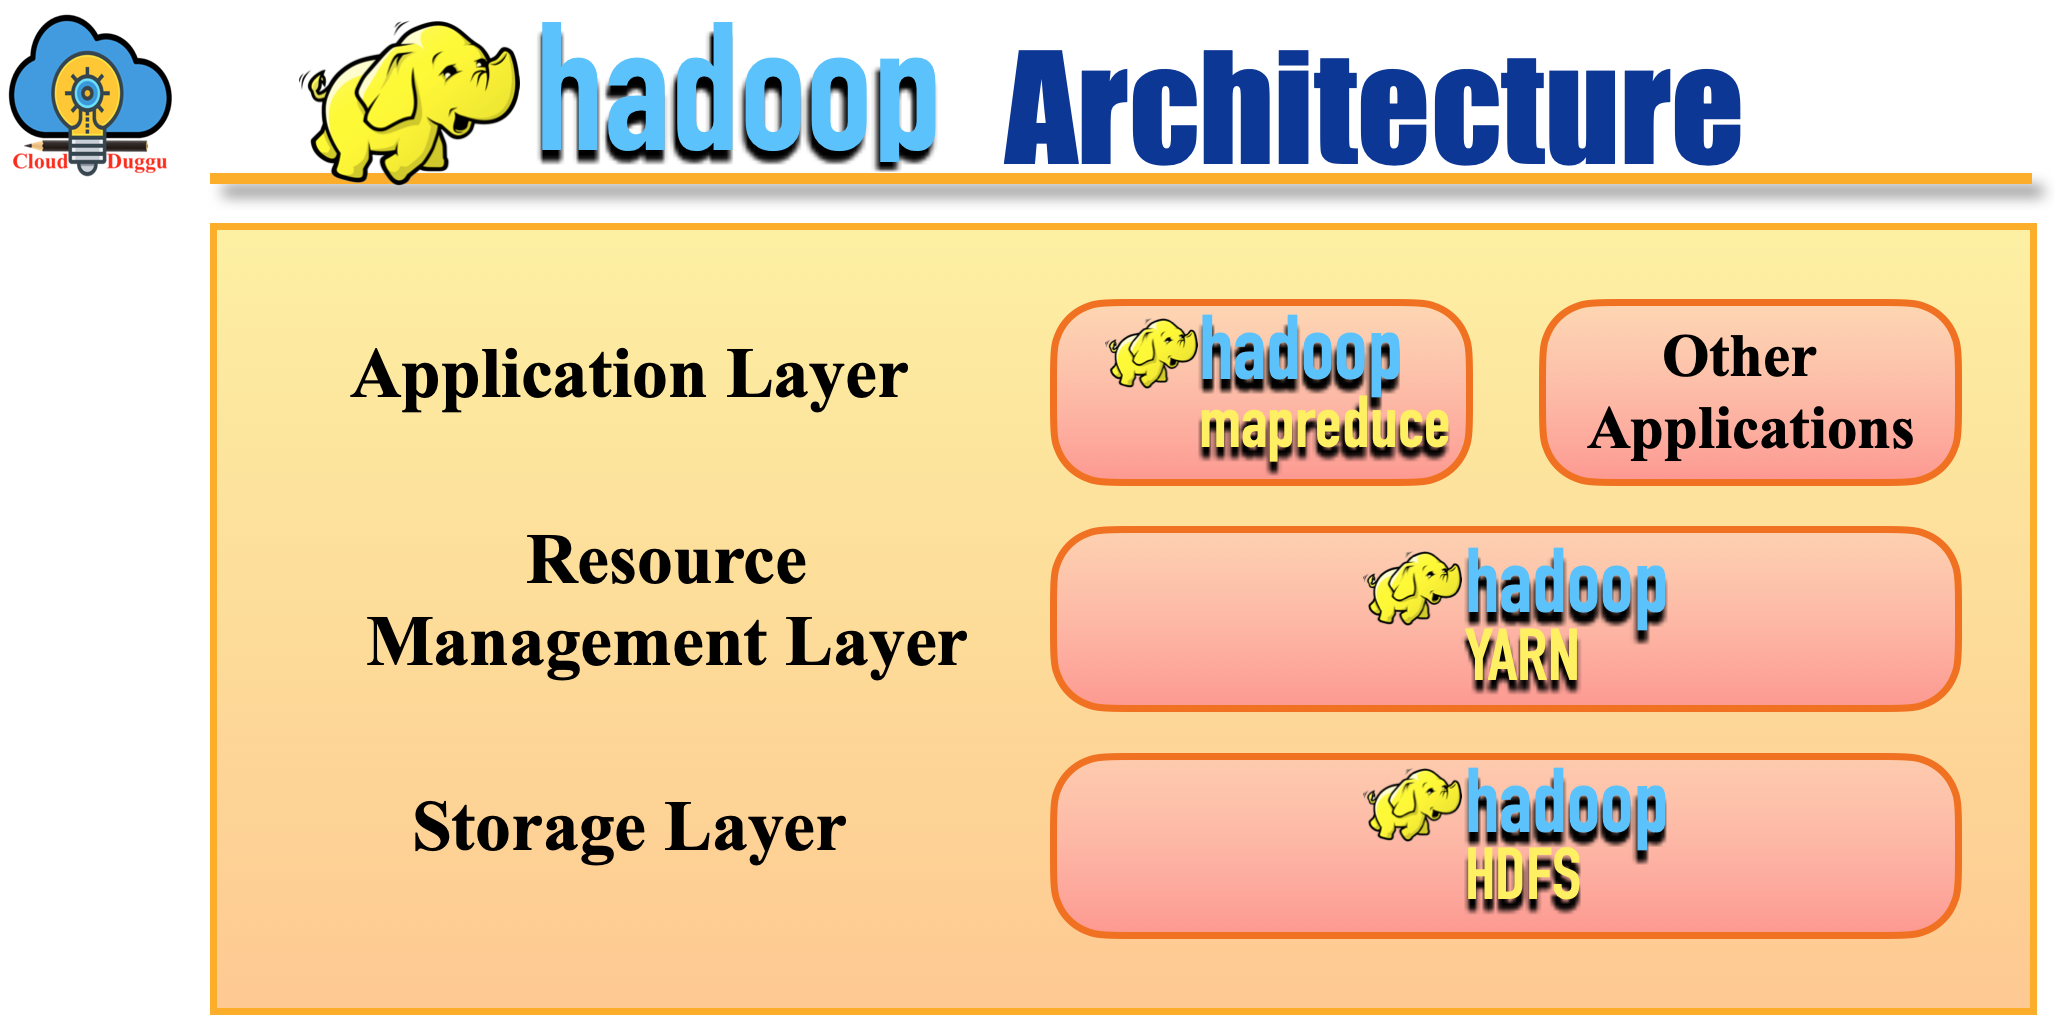 hadoop architecture